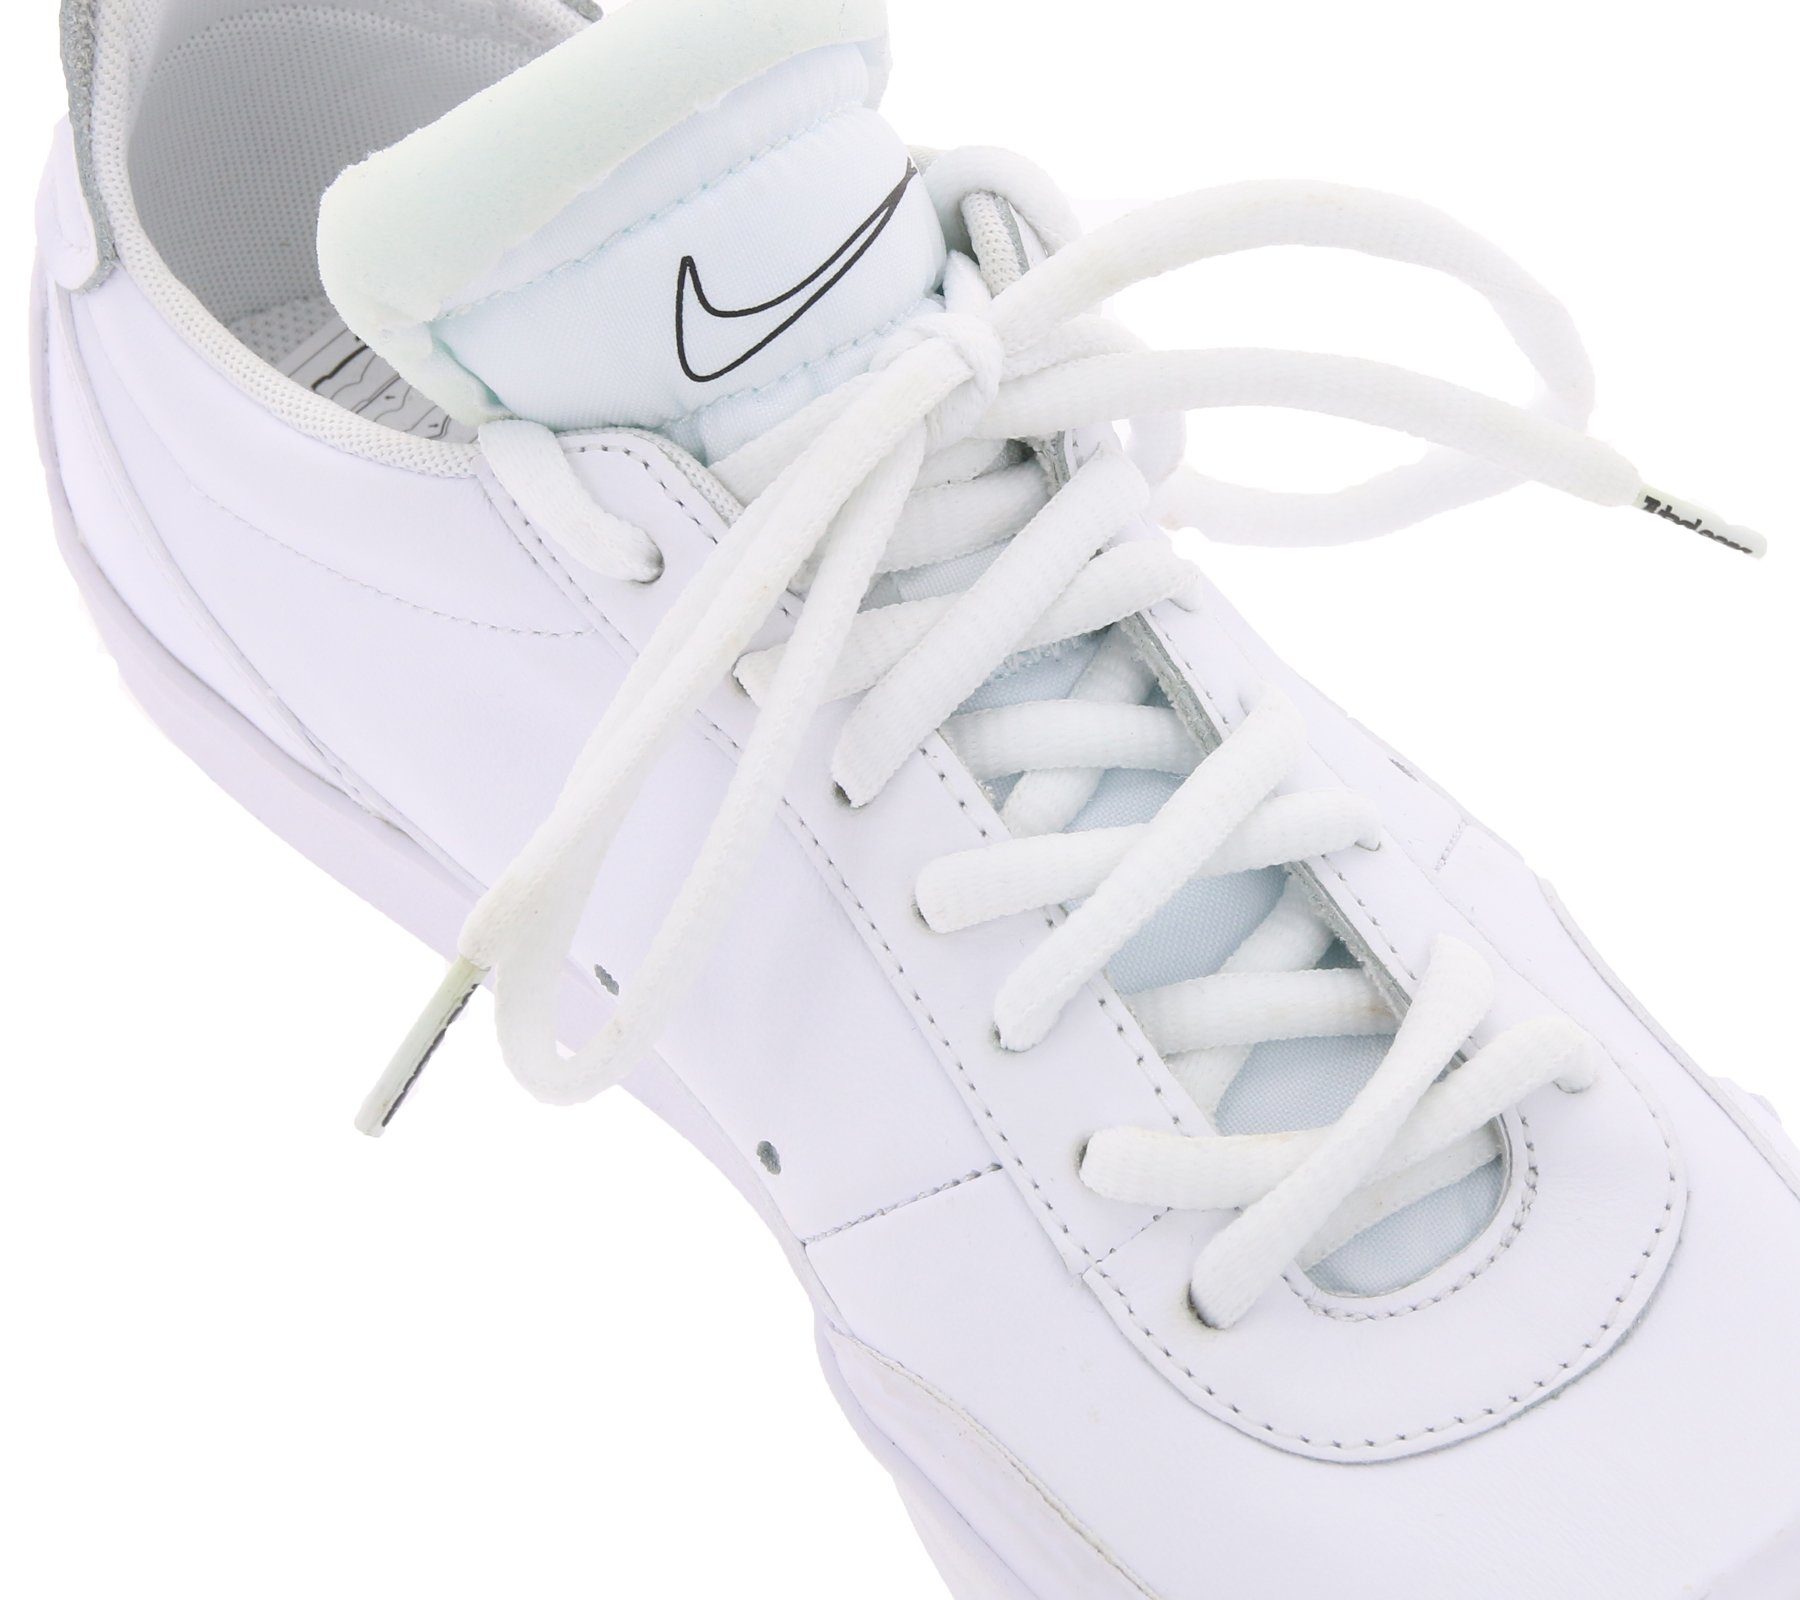 Tubelaces Schnürsenkel TubeLaces Schnürsenkel schlichte Schuh Schnürbänder Schuhband Weiß